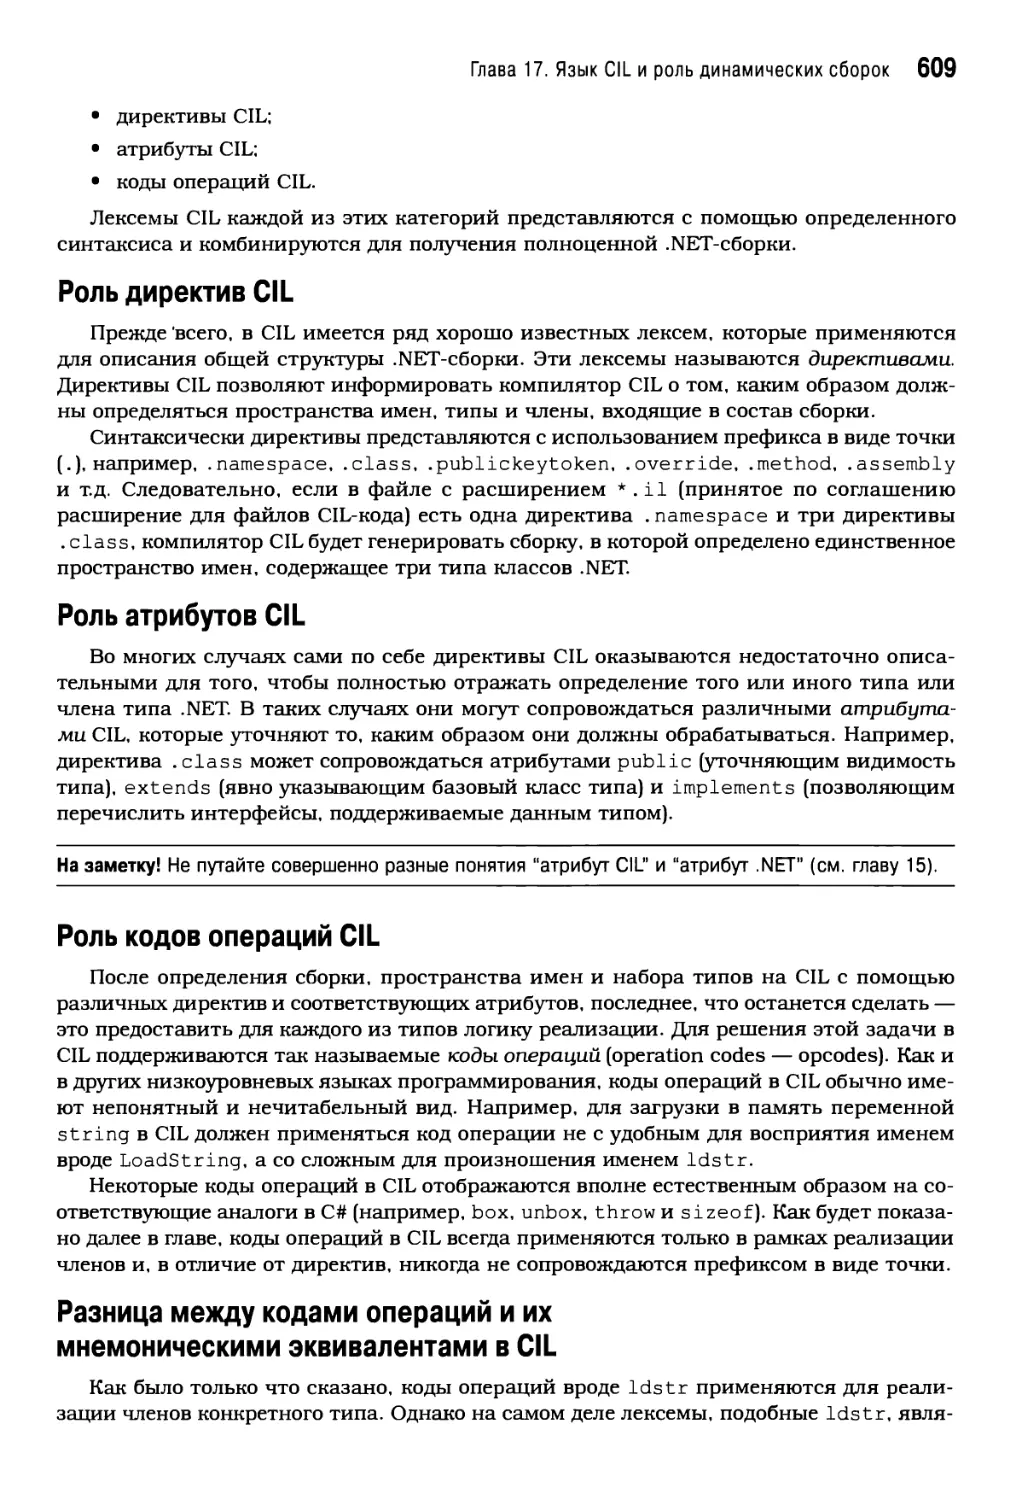 Роль атрибутов CIL
Роль кодов операций CIL
Разница между кодами операций и их мнемоническими эквивалентами в CIL